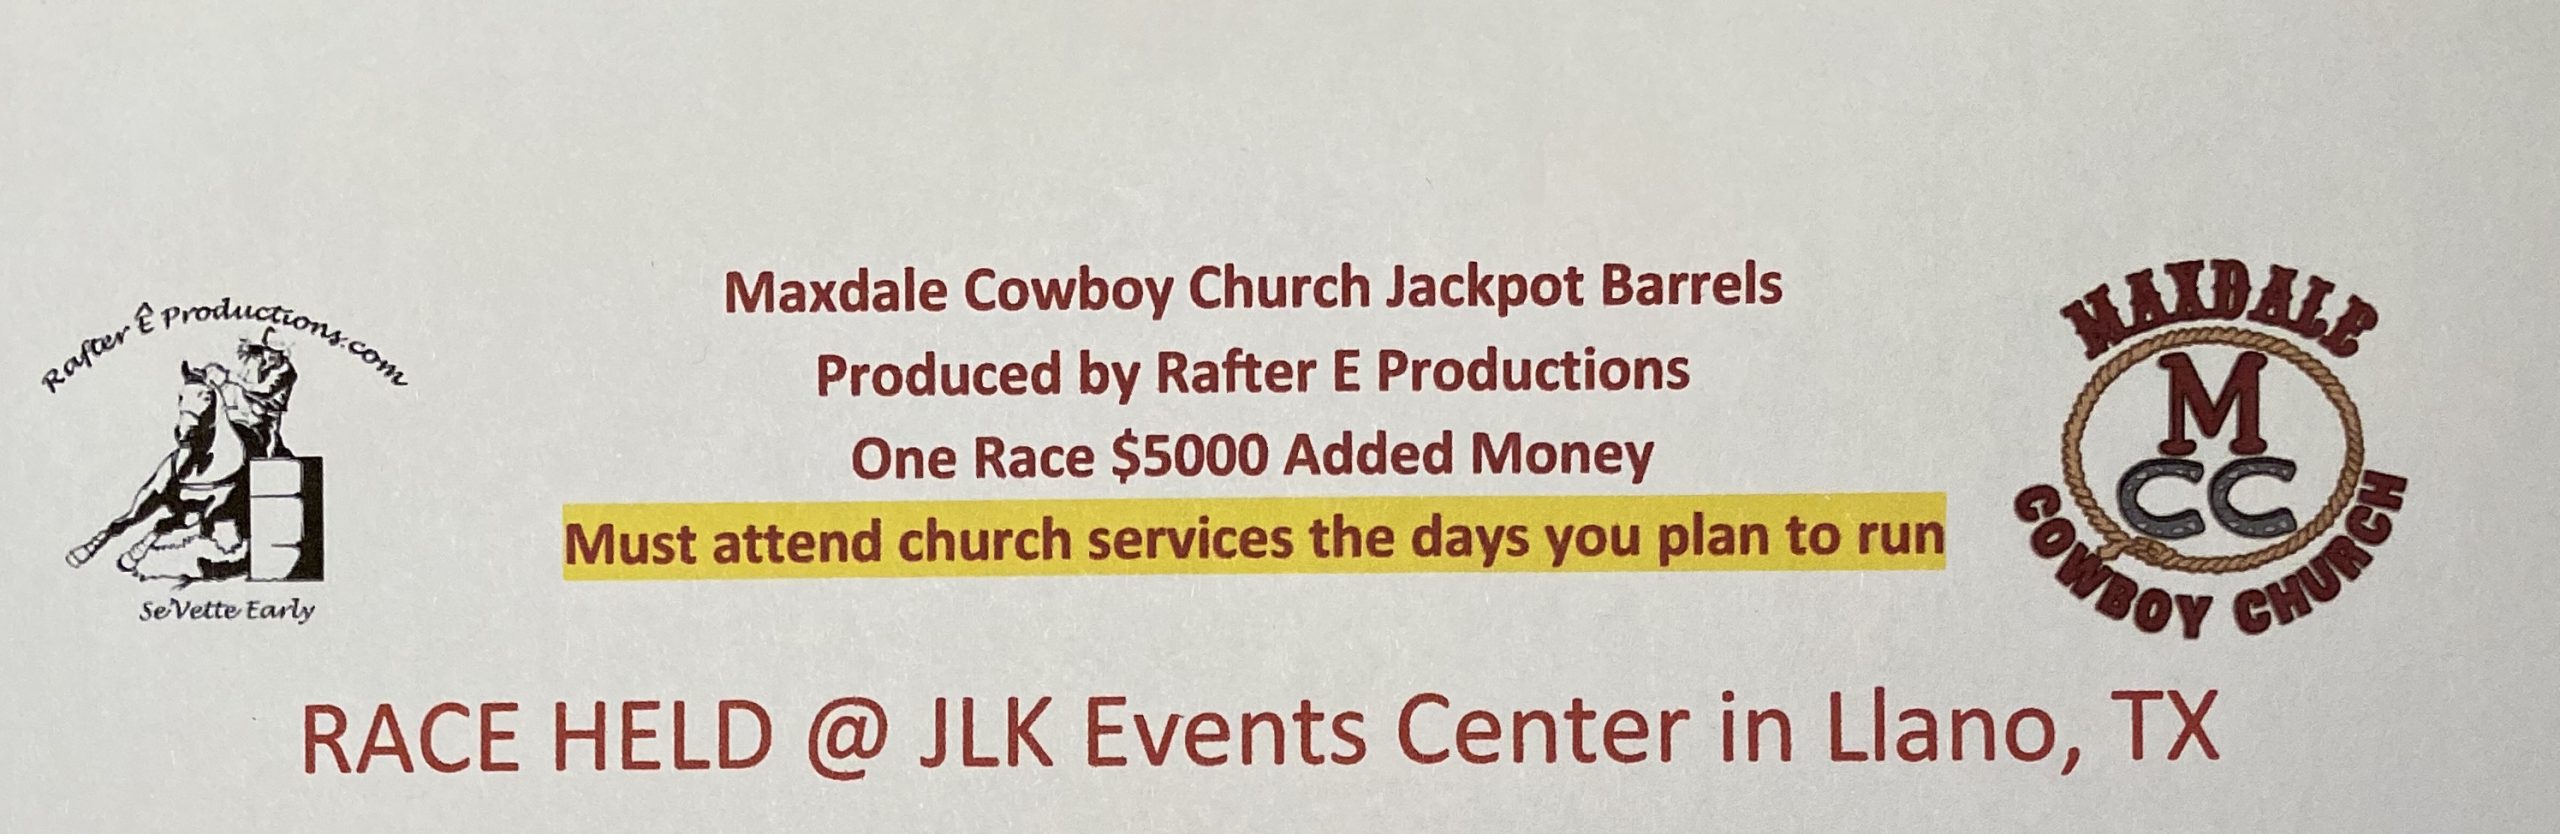 Maxdale Cowboy Church $5000 Added - Ebarrelracing.com